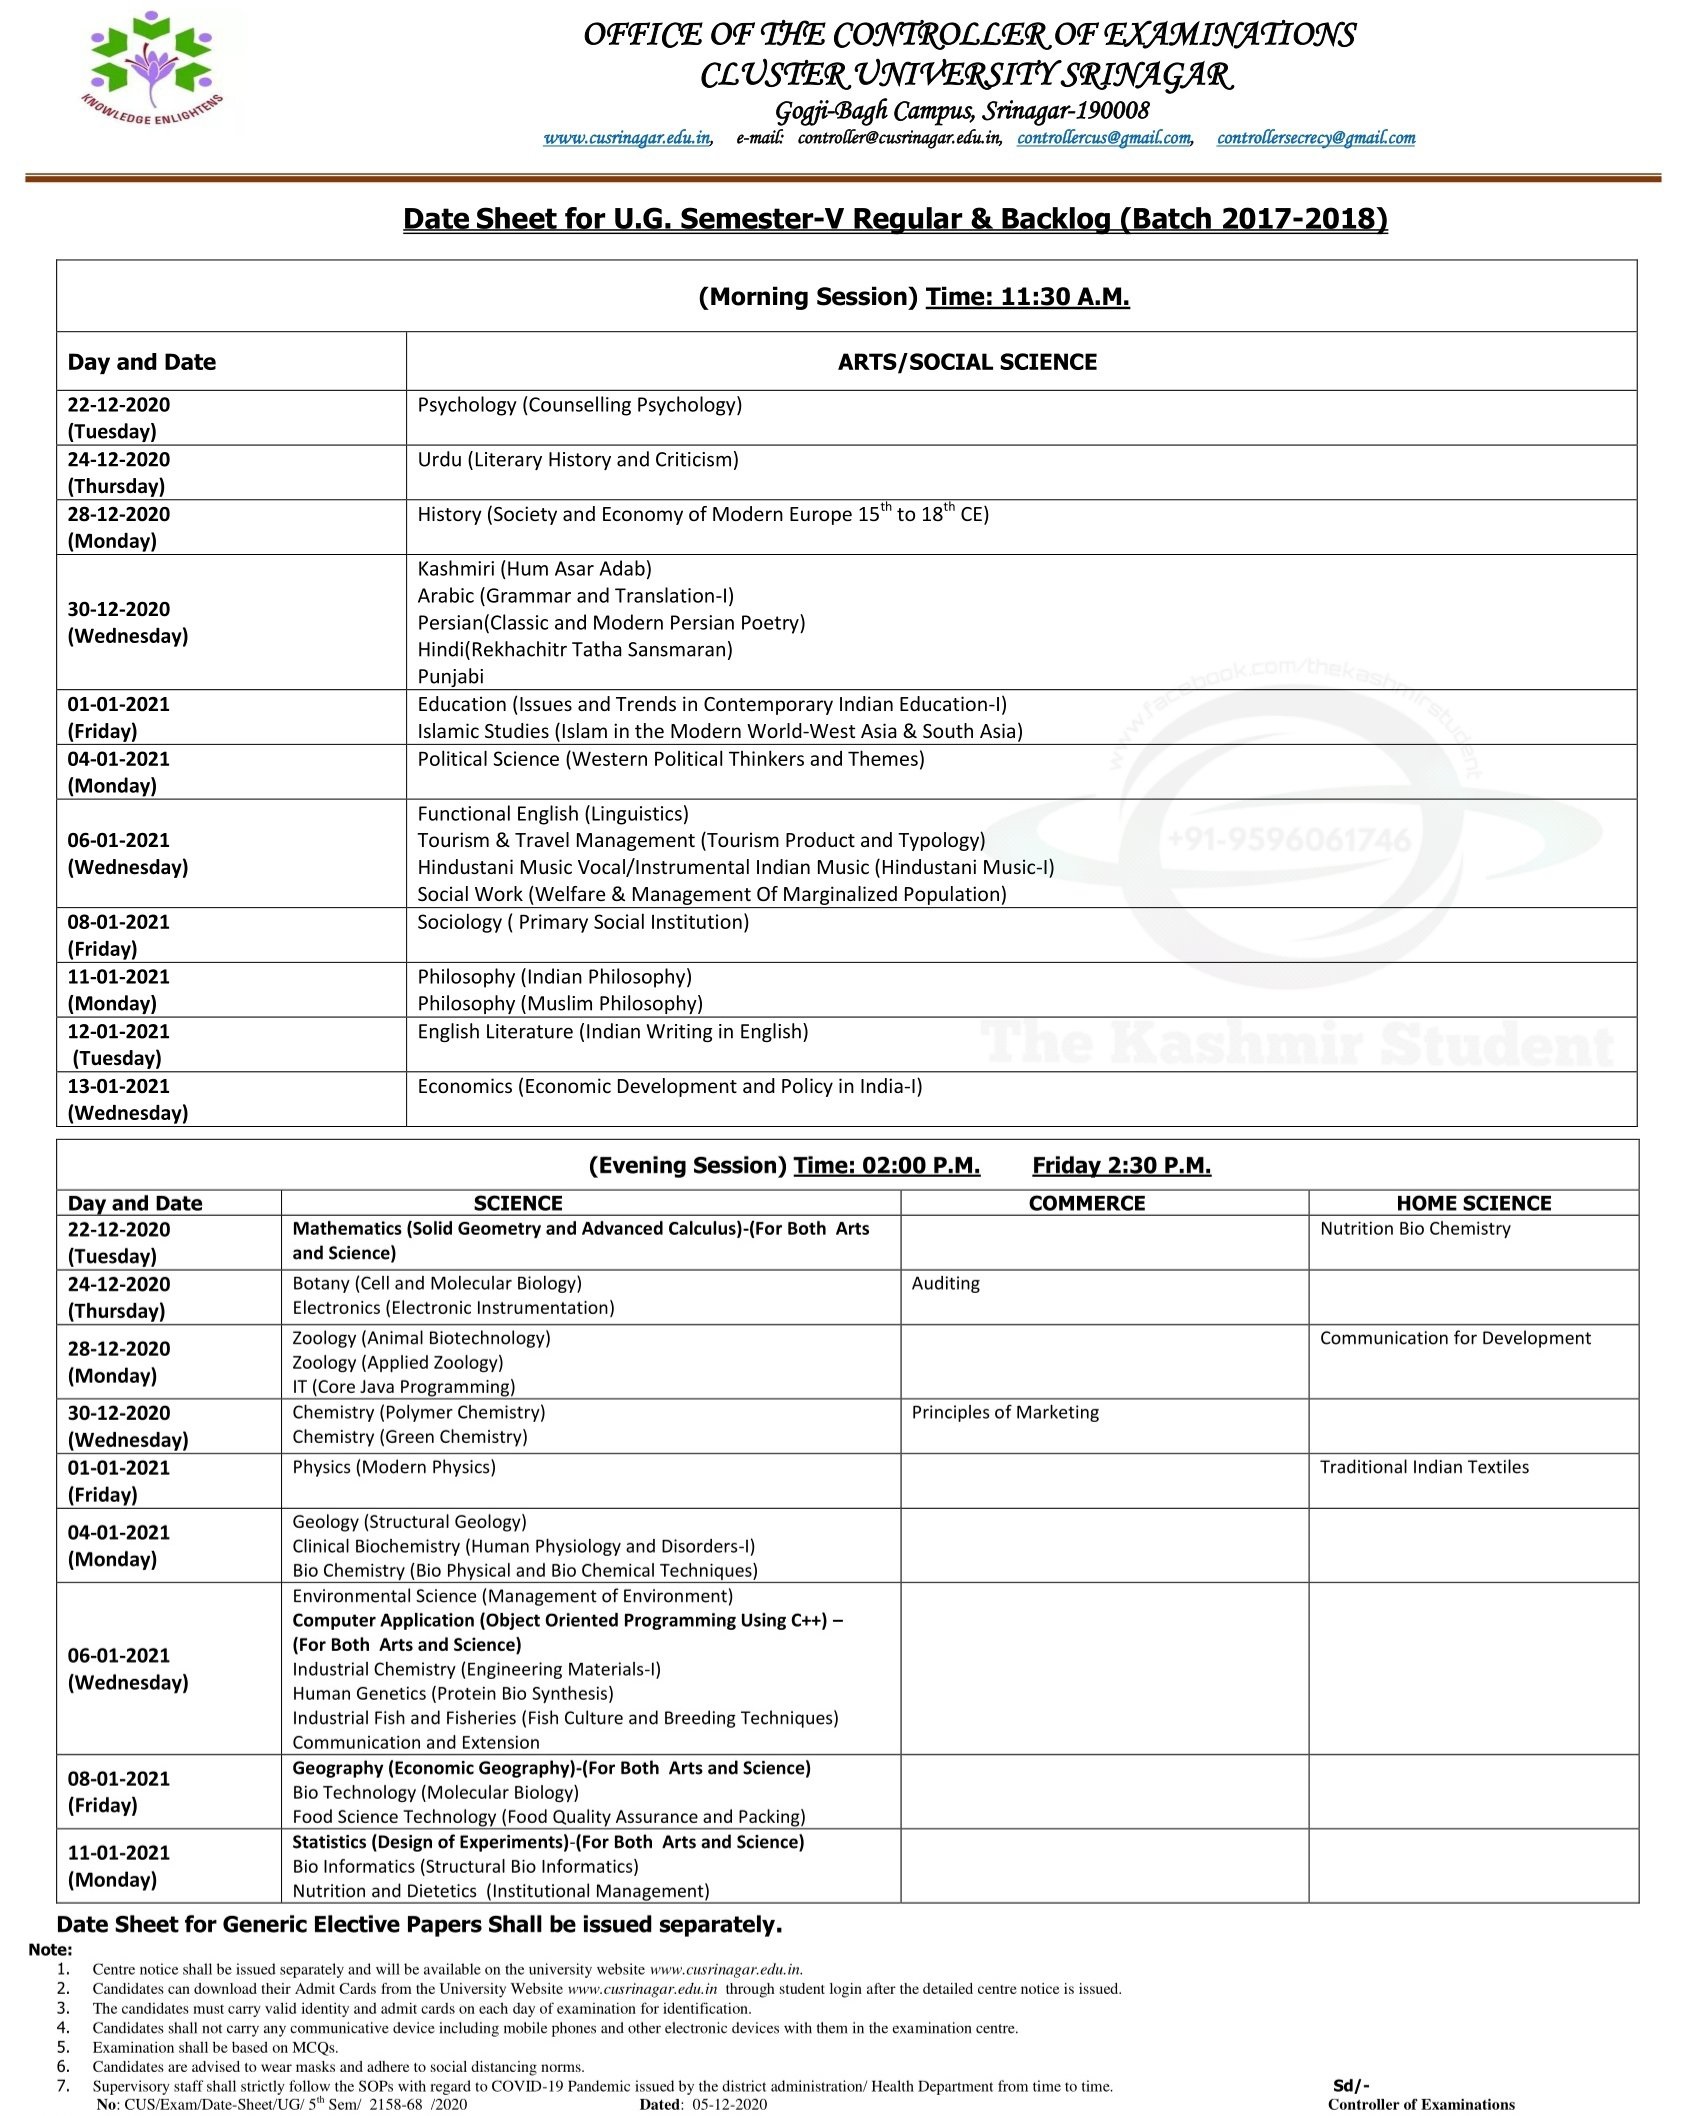 Kashmir university exam date sheet 2020-2021